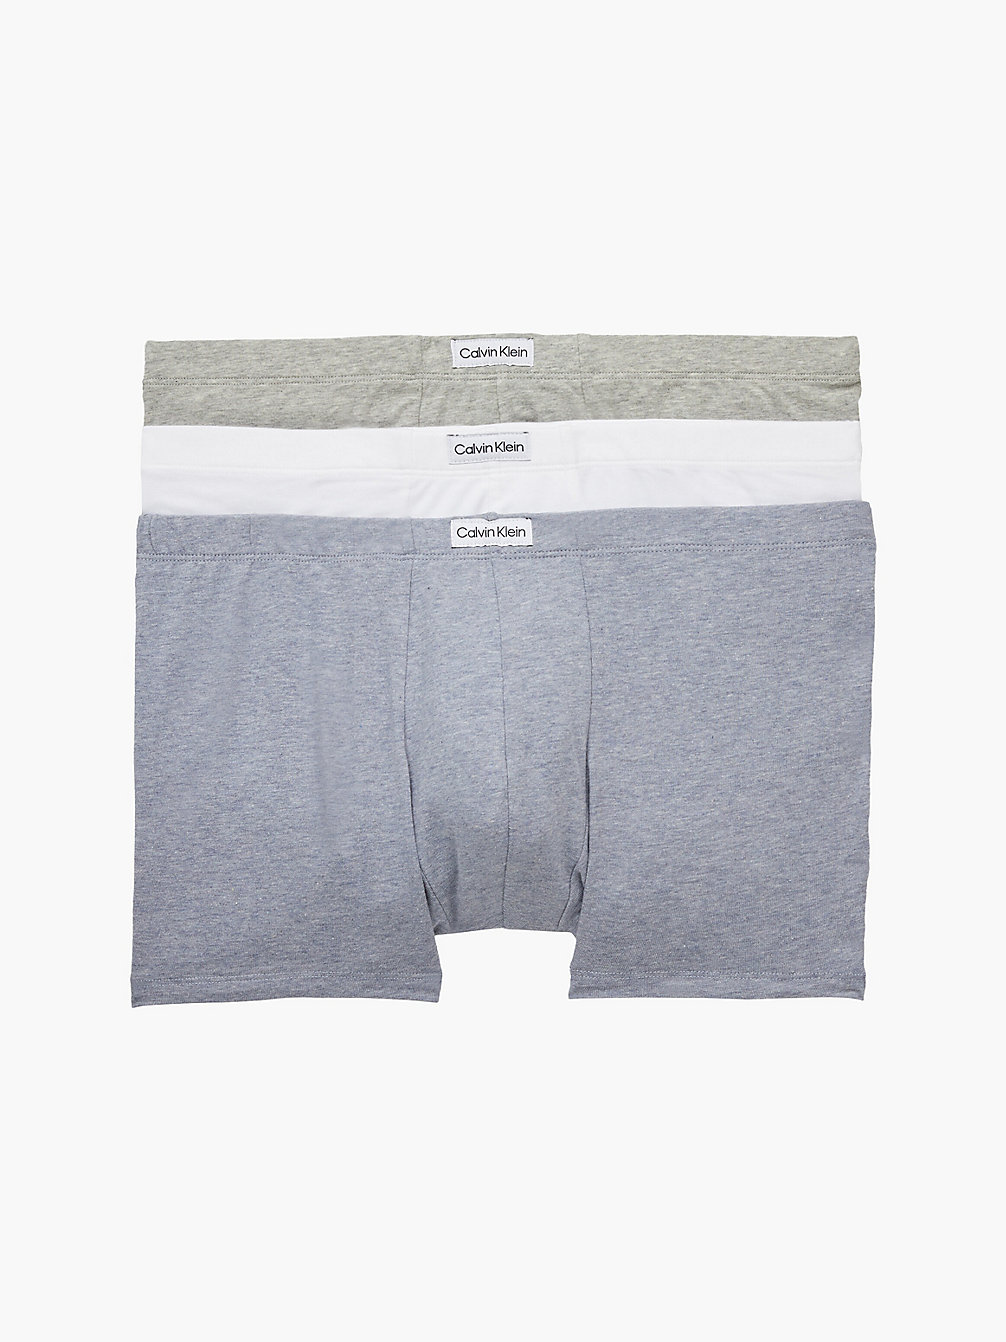 BLU CHBR HTHR/GRY HTHR/WHT 3er-Pack Boxershorts – Pure Cotton undefined Herren Calvin Klein